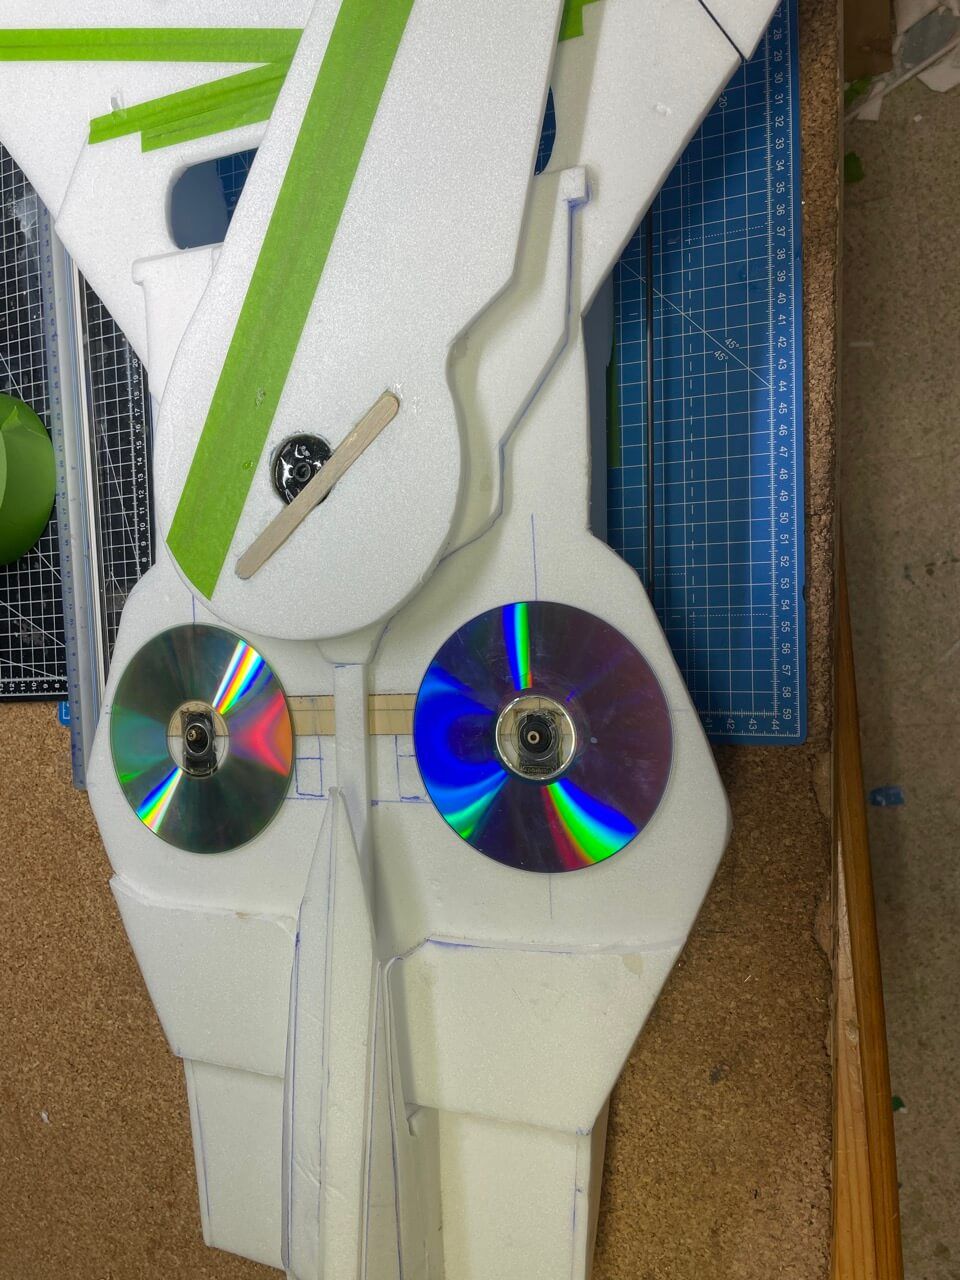 Gleitlager der F14 aus 2 alten CDs